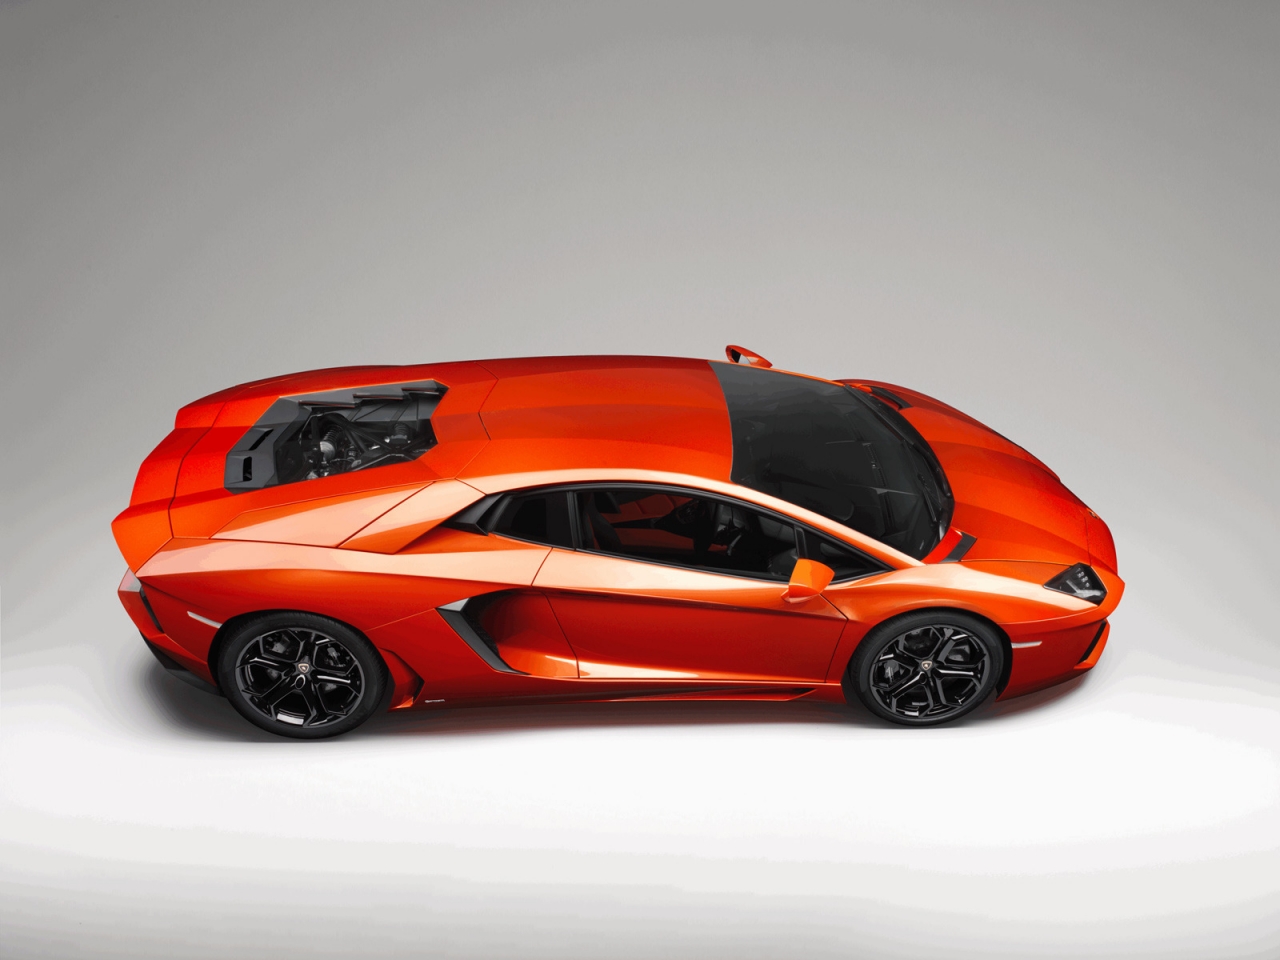 Lamborghini Aventador Studio for 1280 x 960 resolution